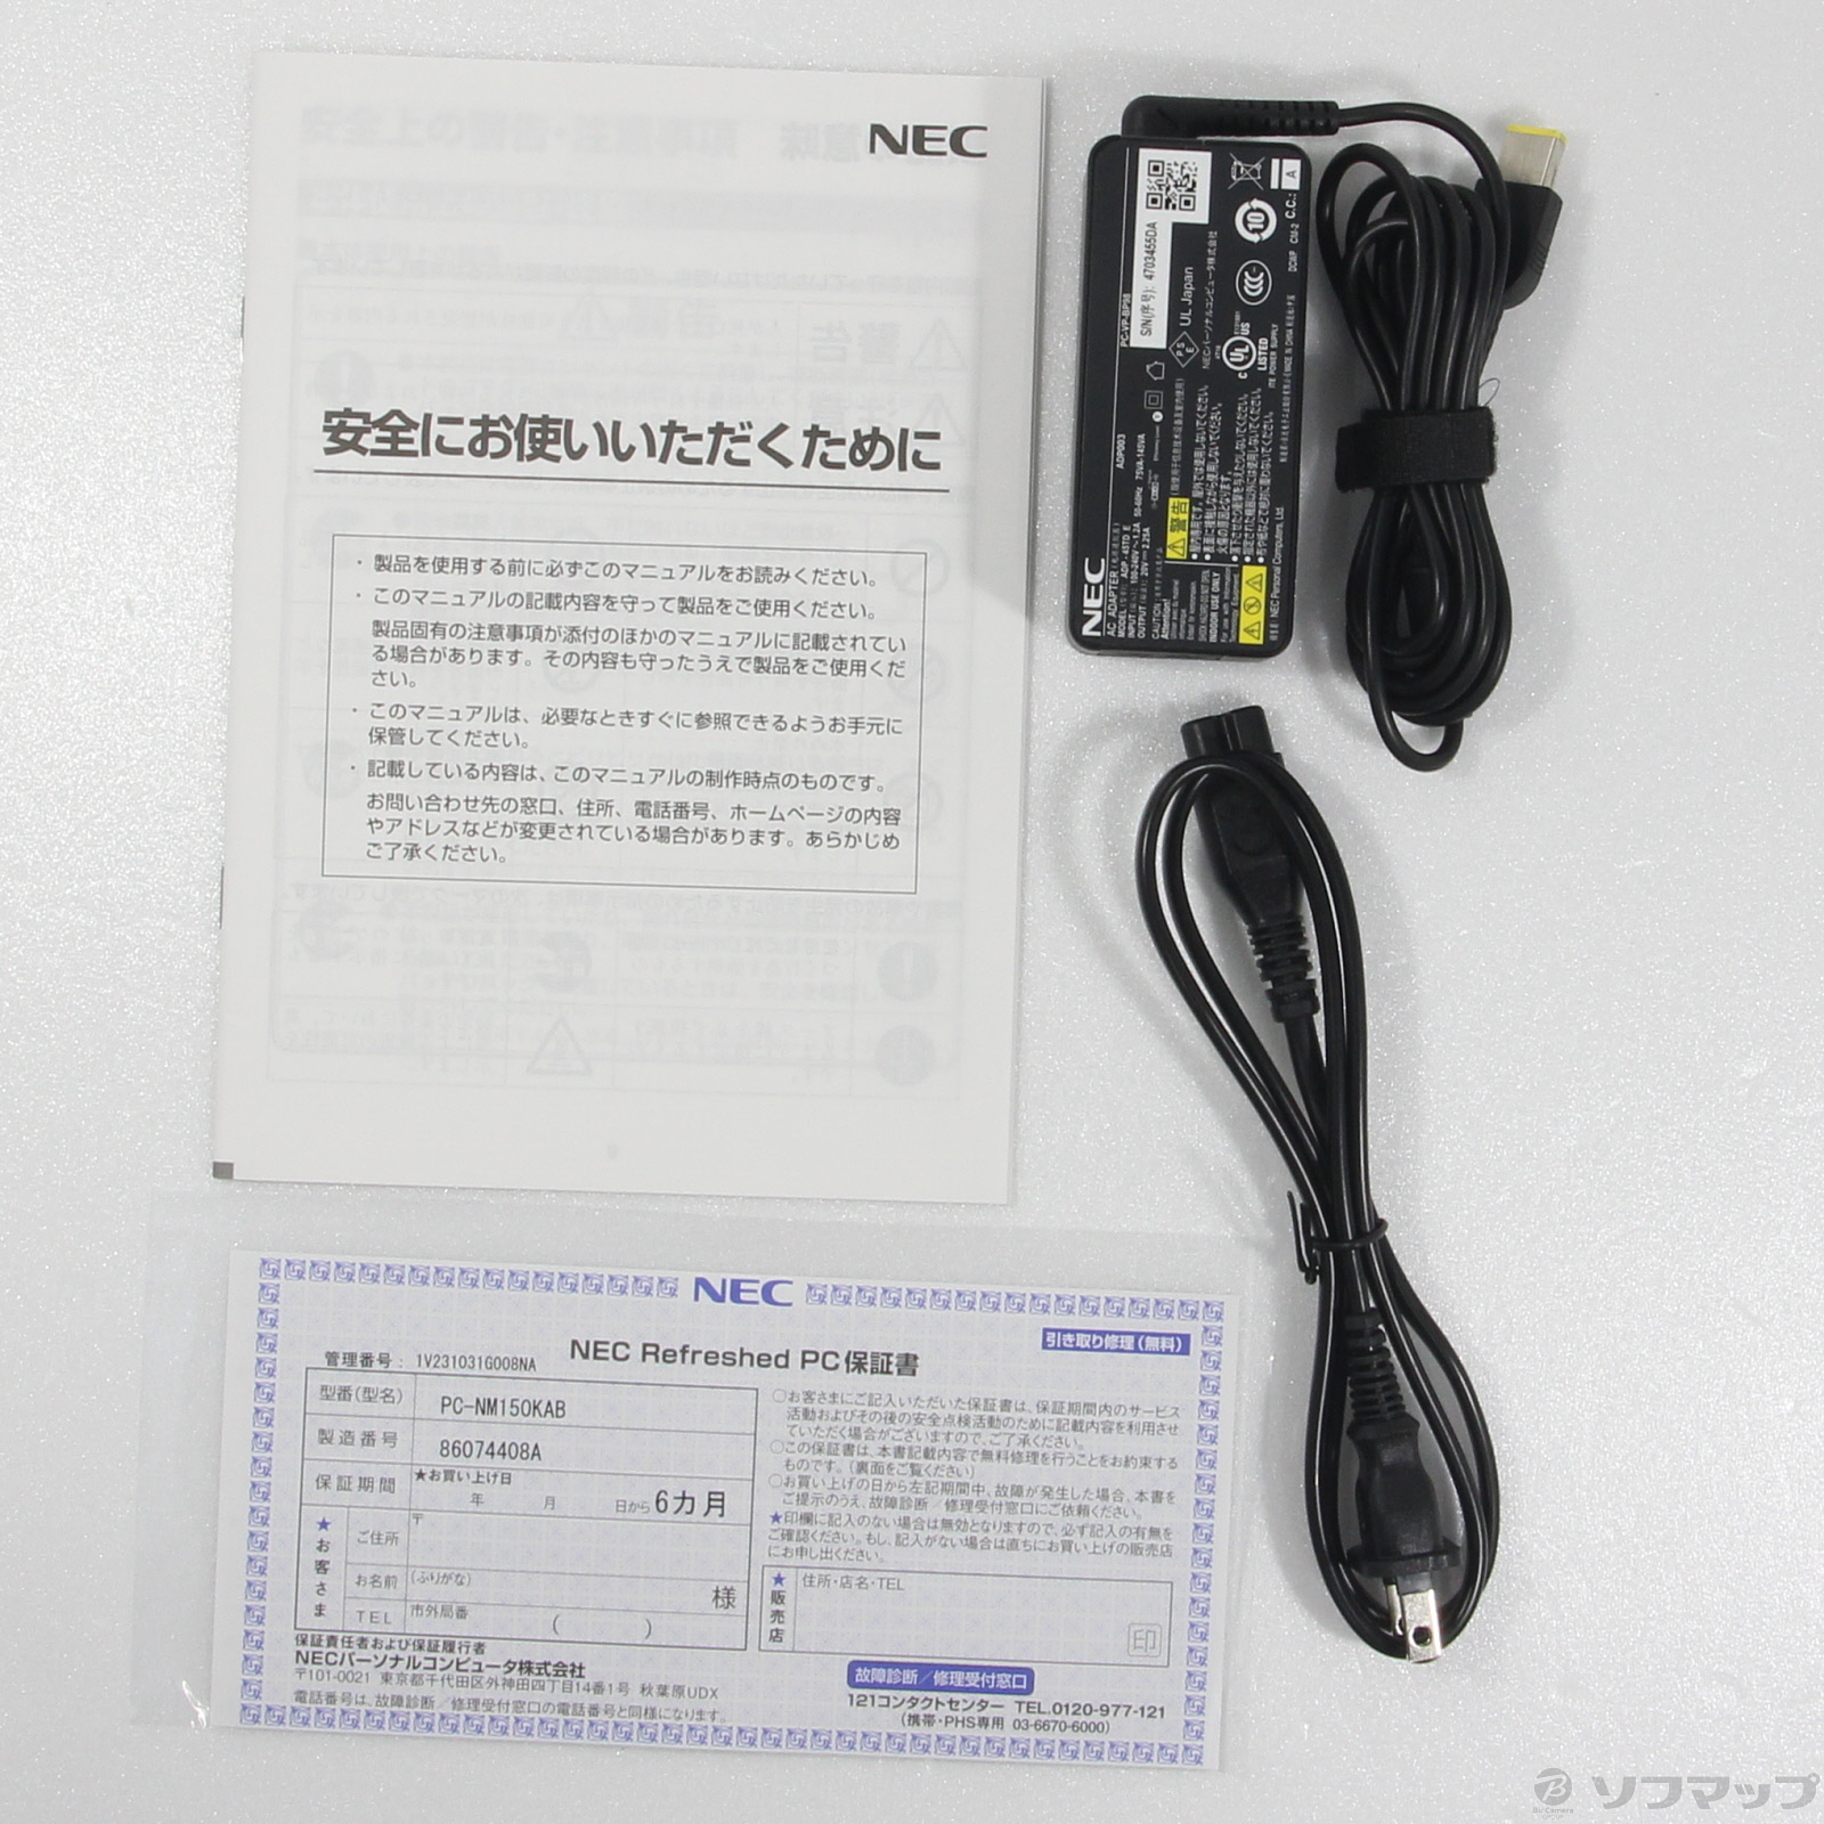 中古】LaVie Note Mobile PC-NM150KAB パールブラック 〔NEC Refreshed